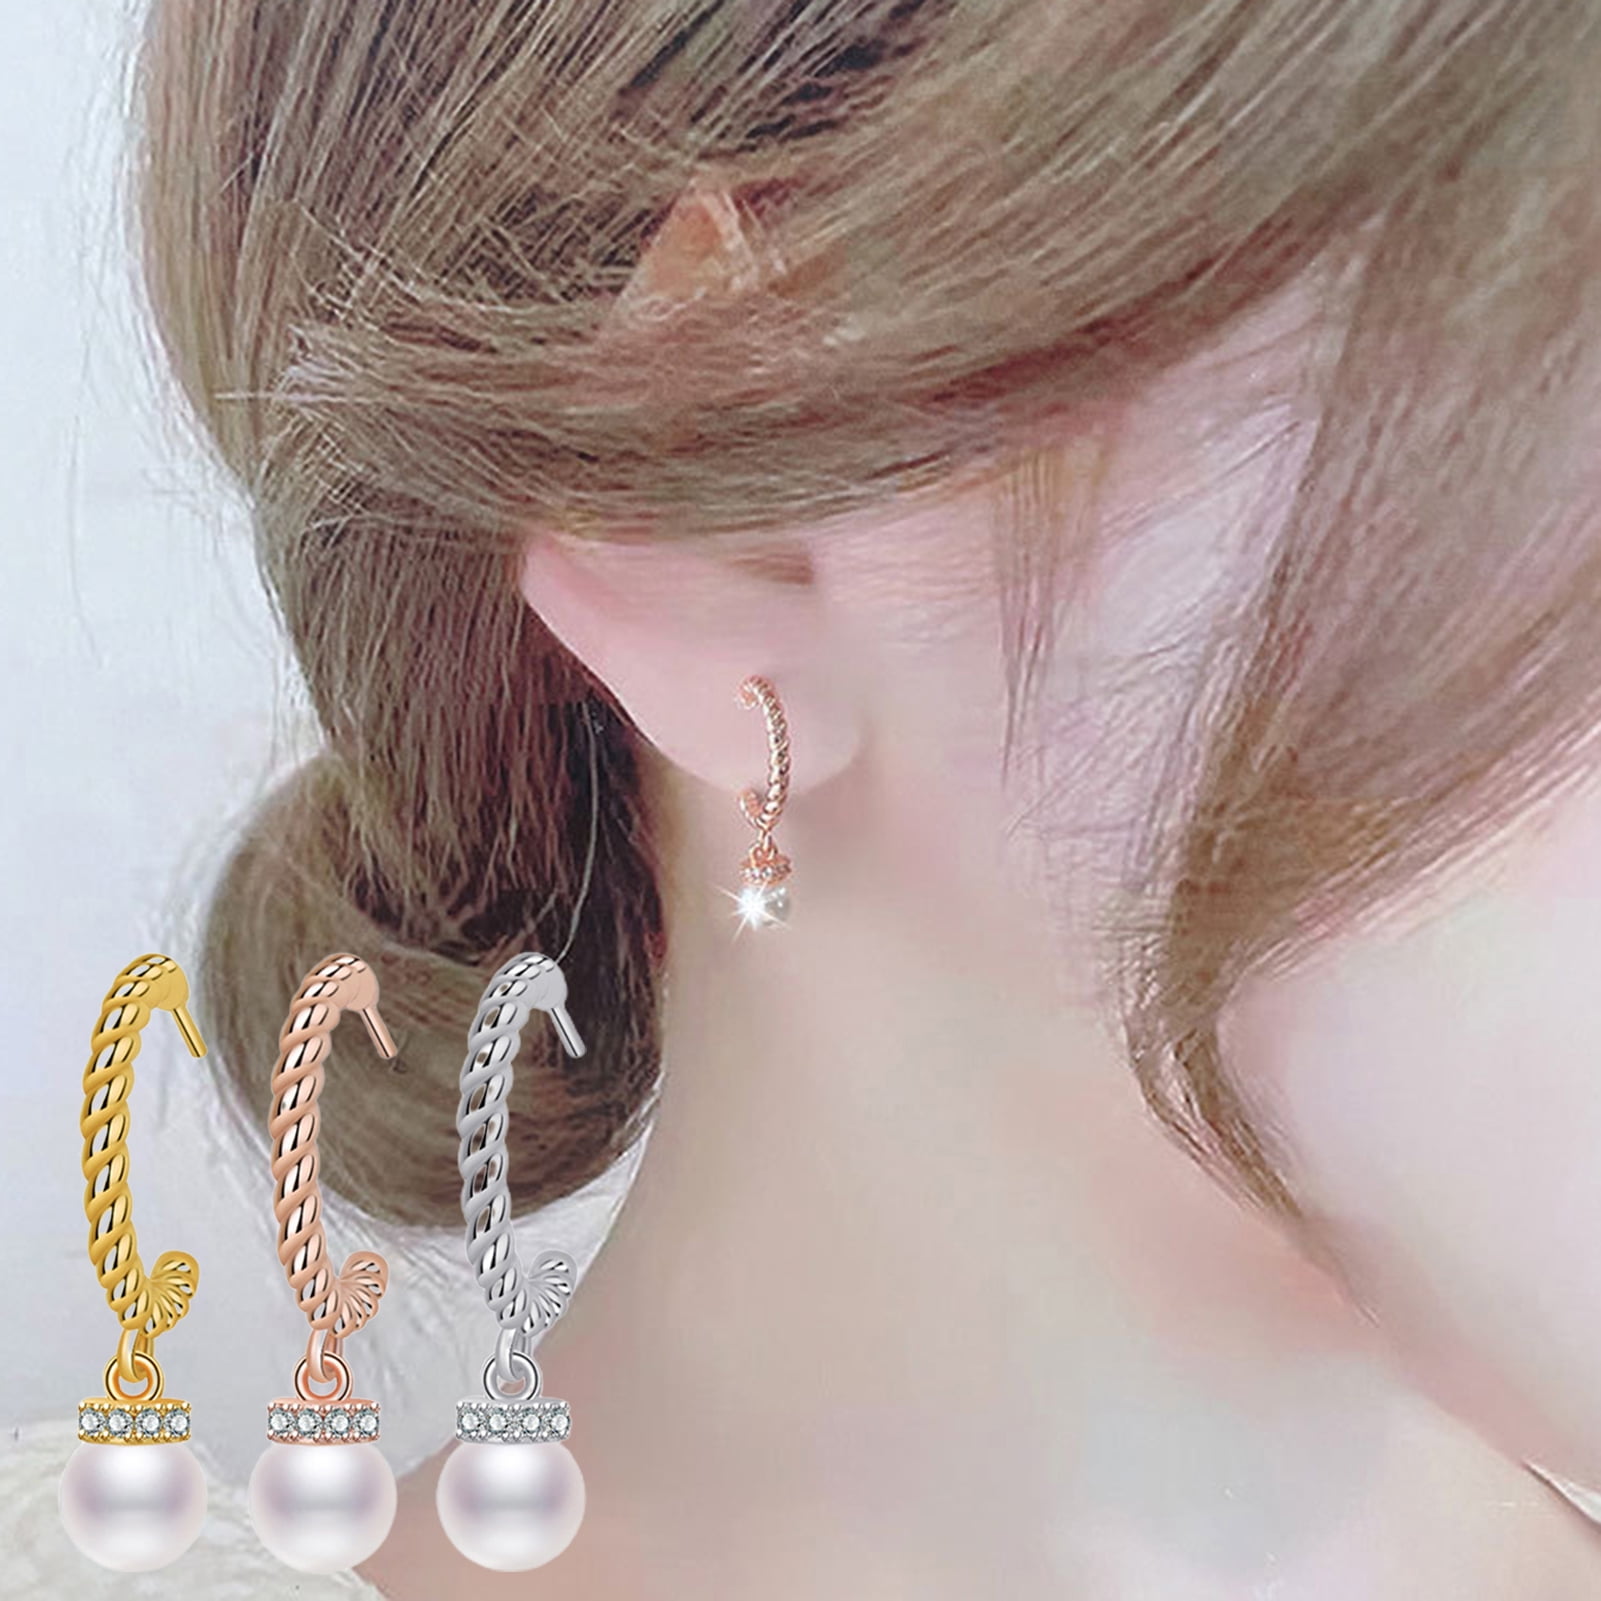 Ink Stoke Silicone Earrings — aKresse Jewelry Design